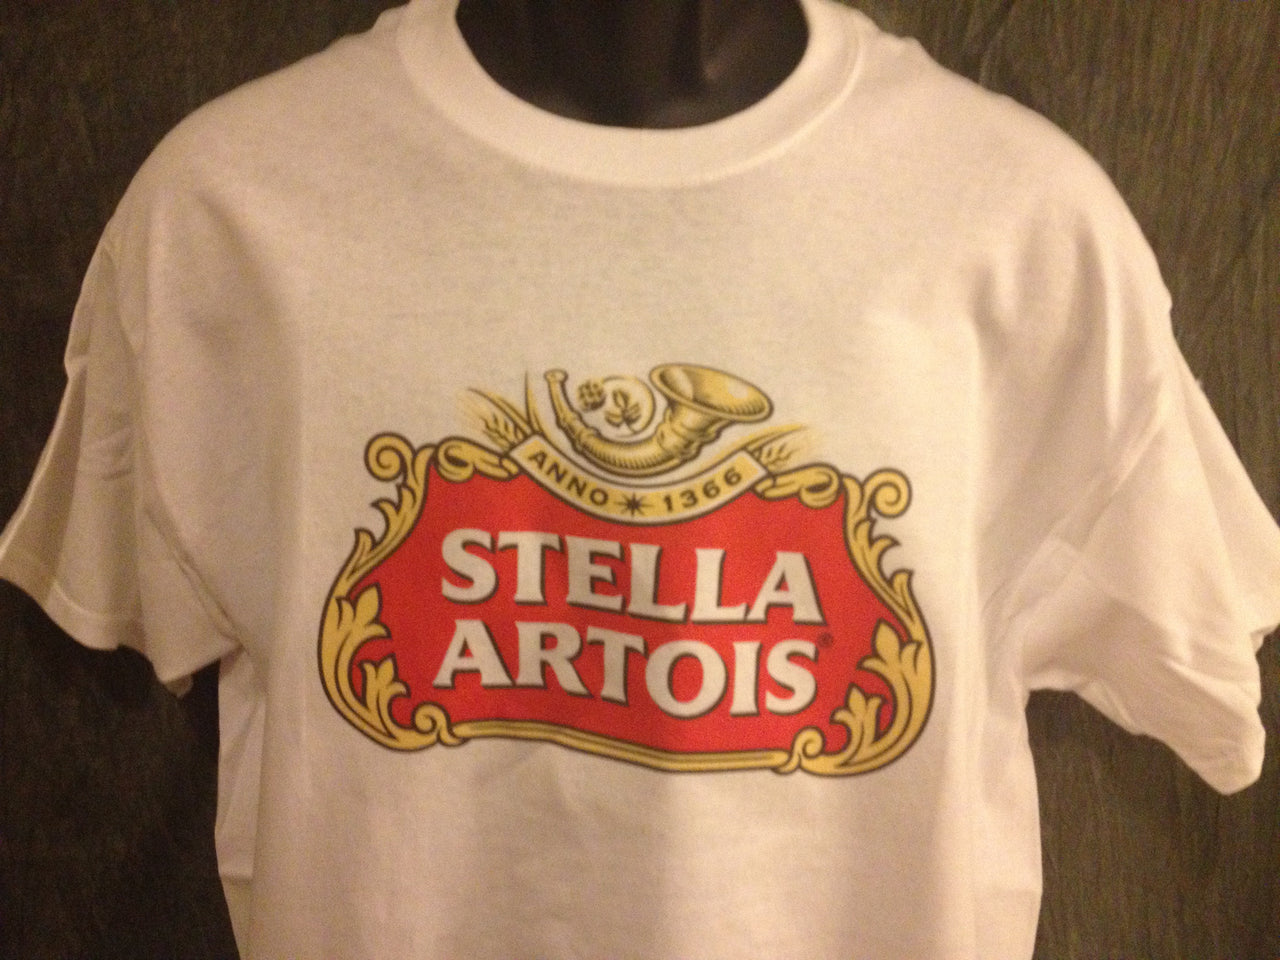 Stella Artois Beer Tshirt - TshirtNow.net - 2